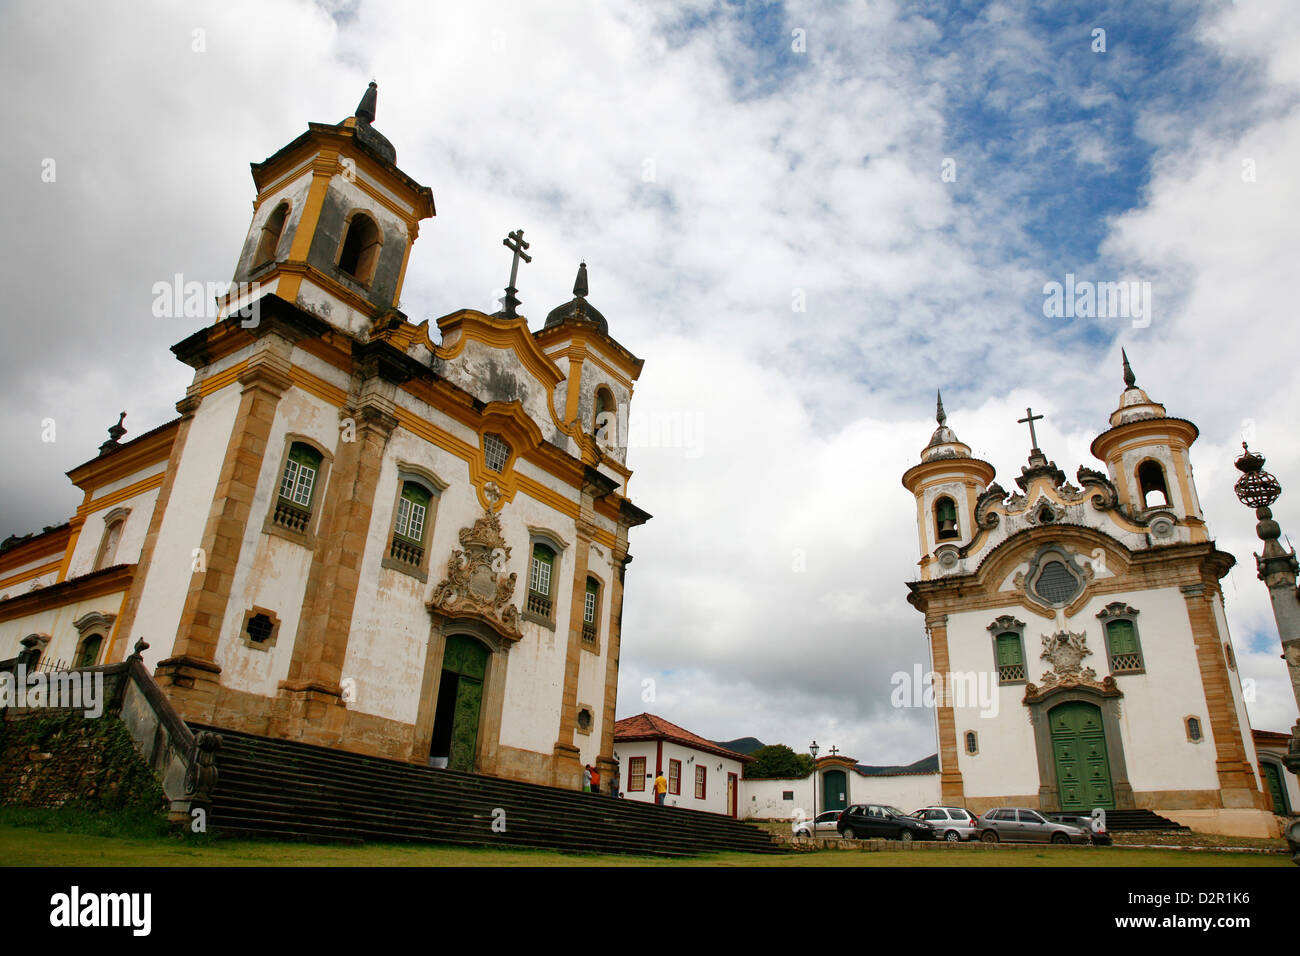 Sao Francisco de Assis and Nossa Senhora do Carmo churches at Praca Minas Gerais, Mariana, Minas Gerais, Brazil Stock Photo